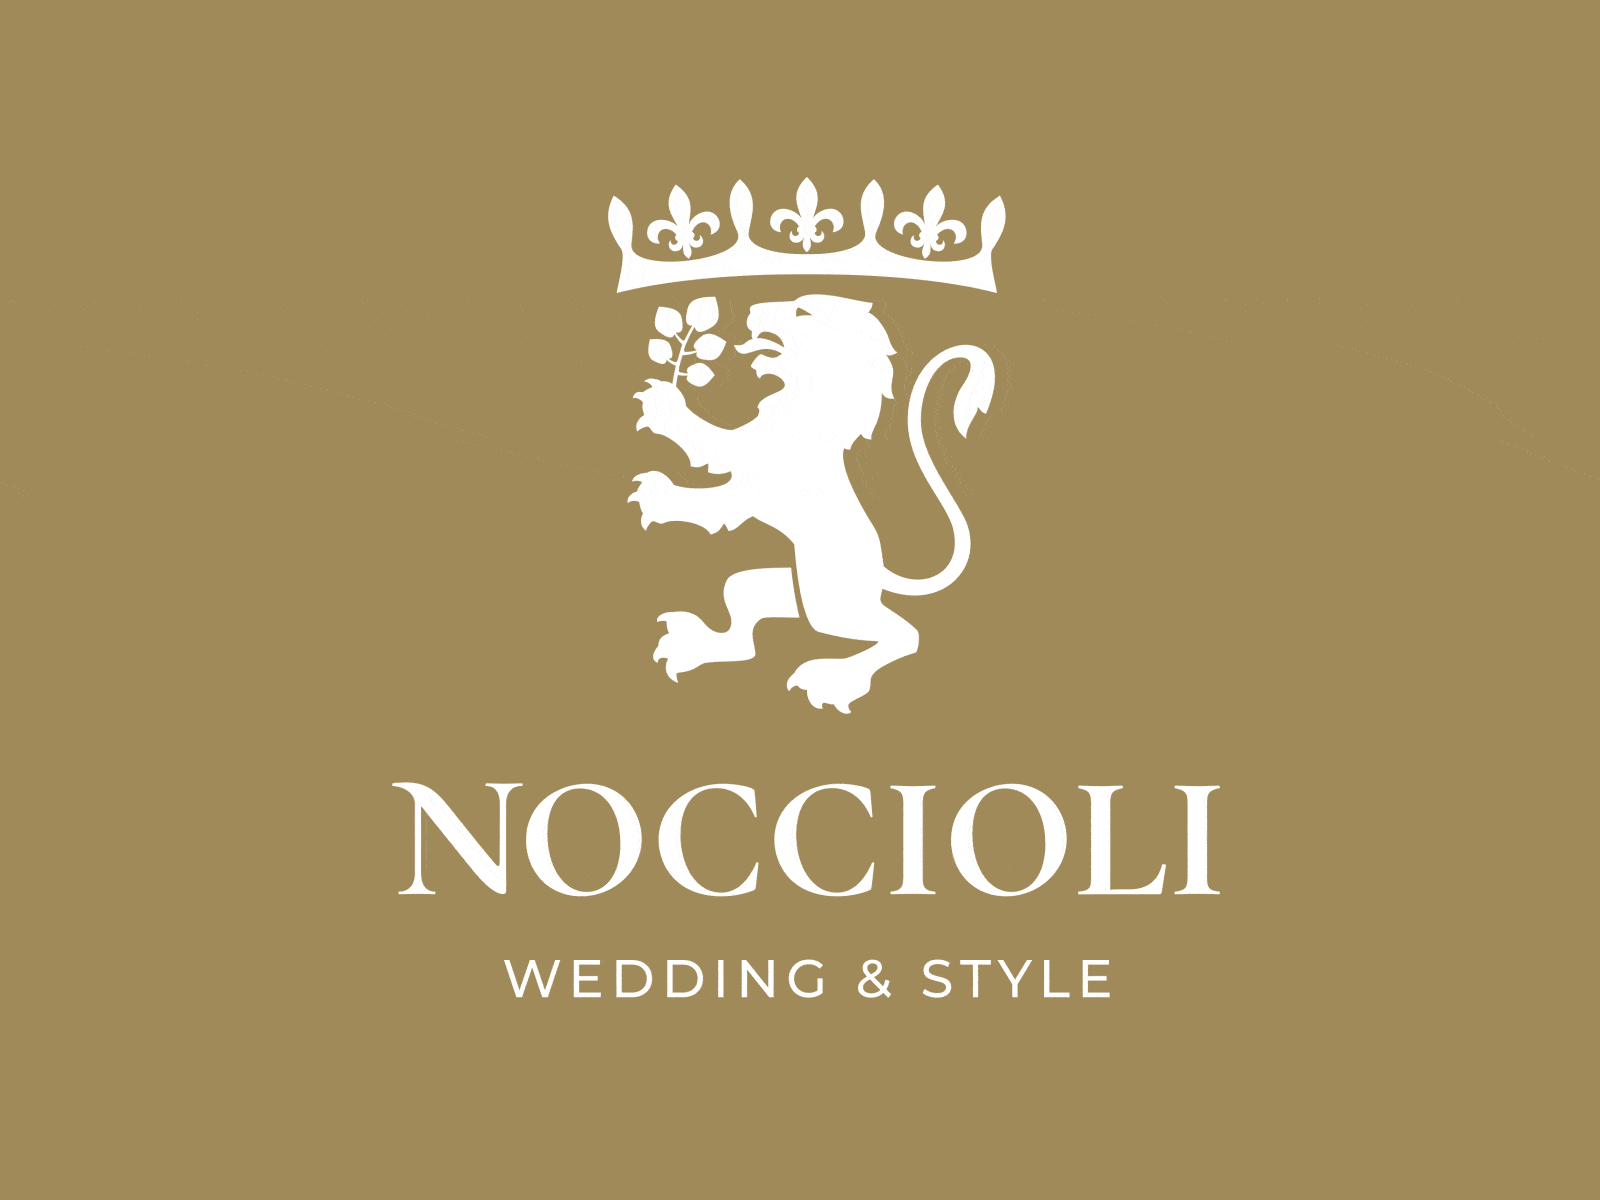 Noccioli logo animation animated animation animation 2d design illustration lion logo logo animation motion design motion graphics noccioli style ui wedding